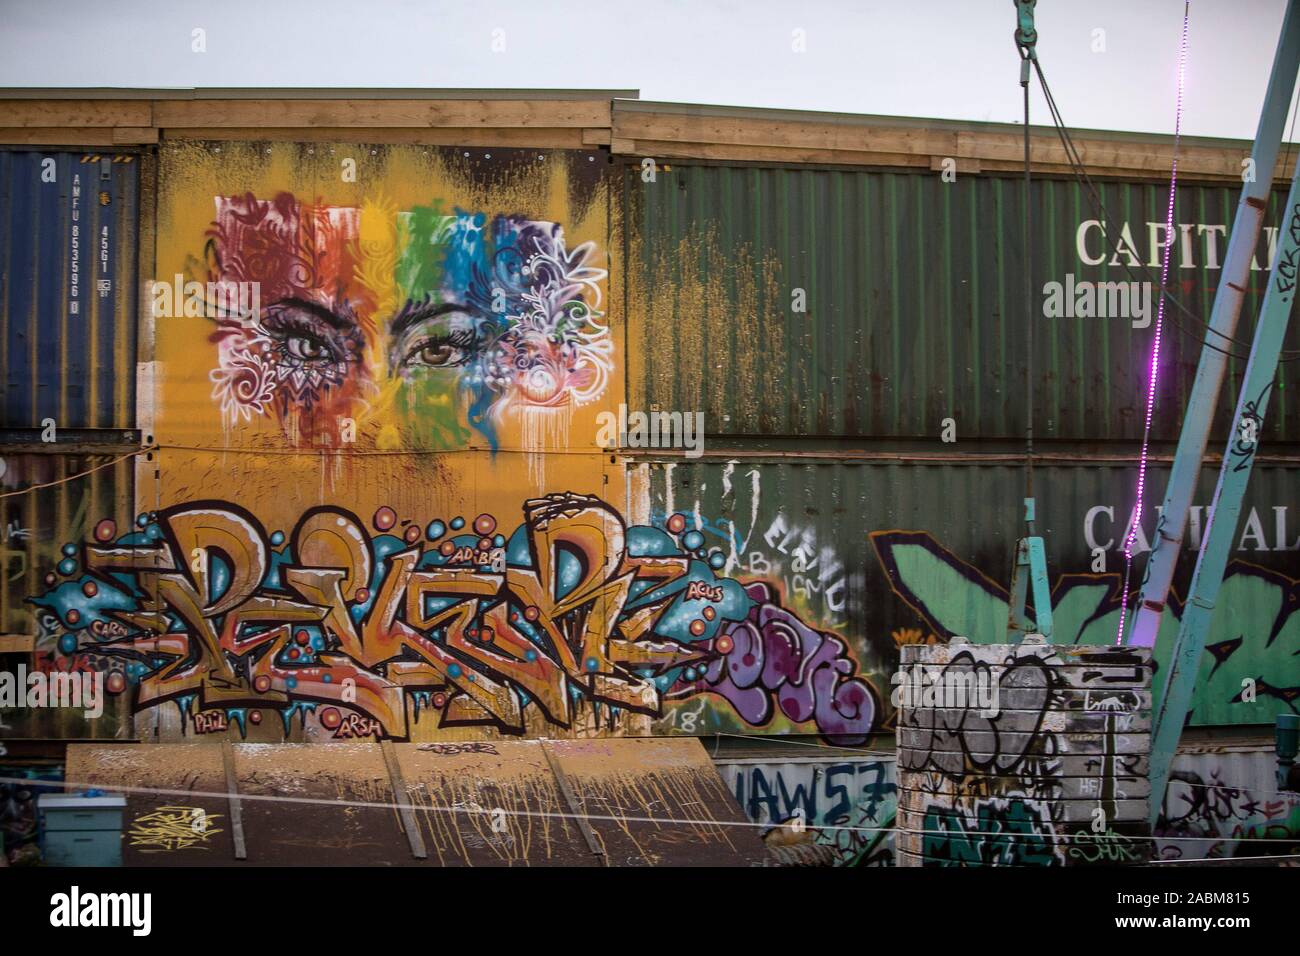 Carrozze ferroviarie spruzzata con graffiti nella stazione keeper Thiel. [Traduzione automatizzata] Foto Stock